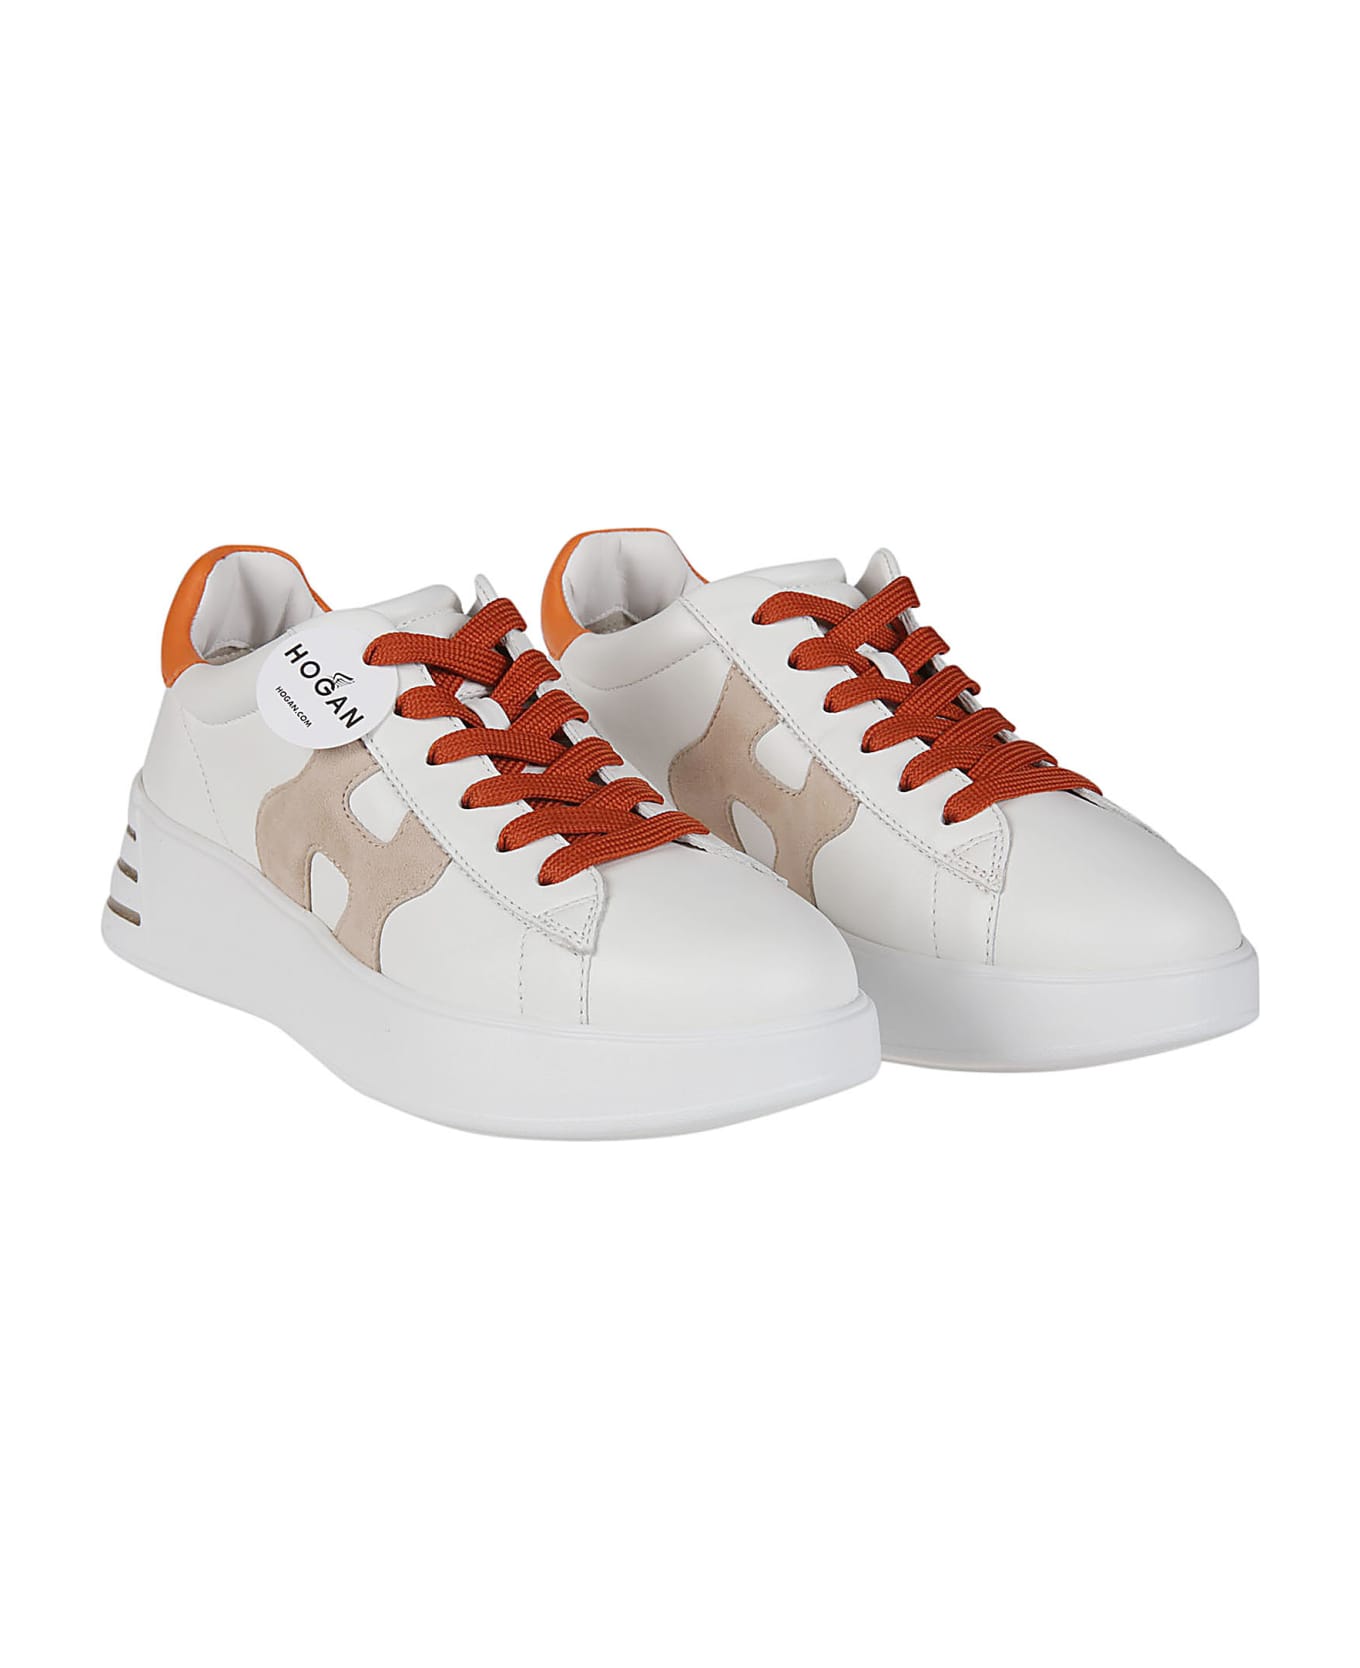 Hogan Rebel H564 Sneakers - Yef Bianco/zenzero